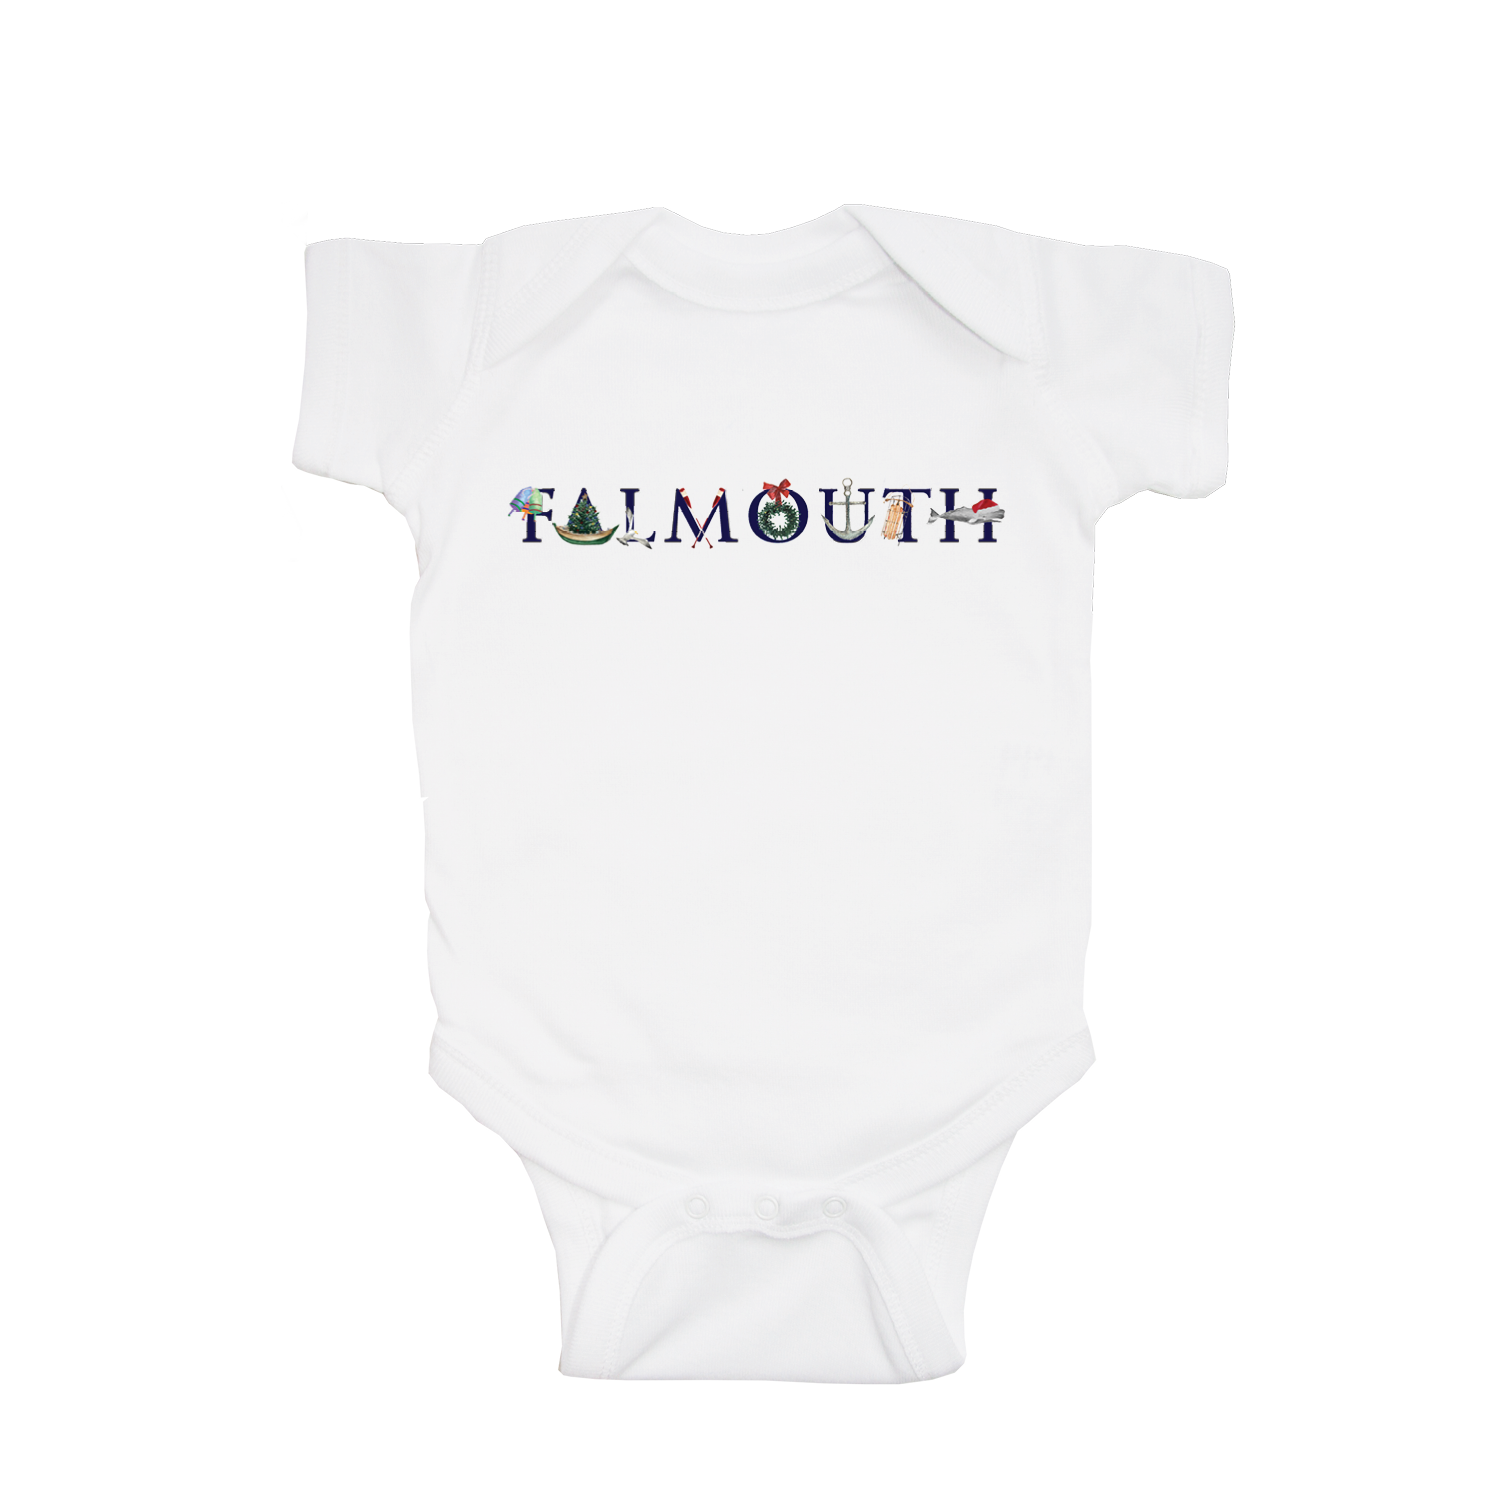 falmouth holiday baby snap up short sleeve